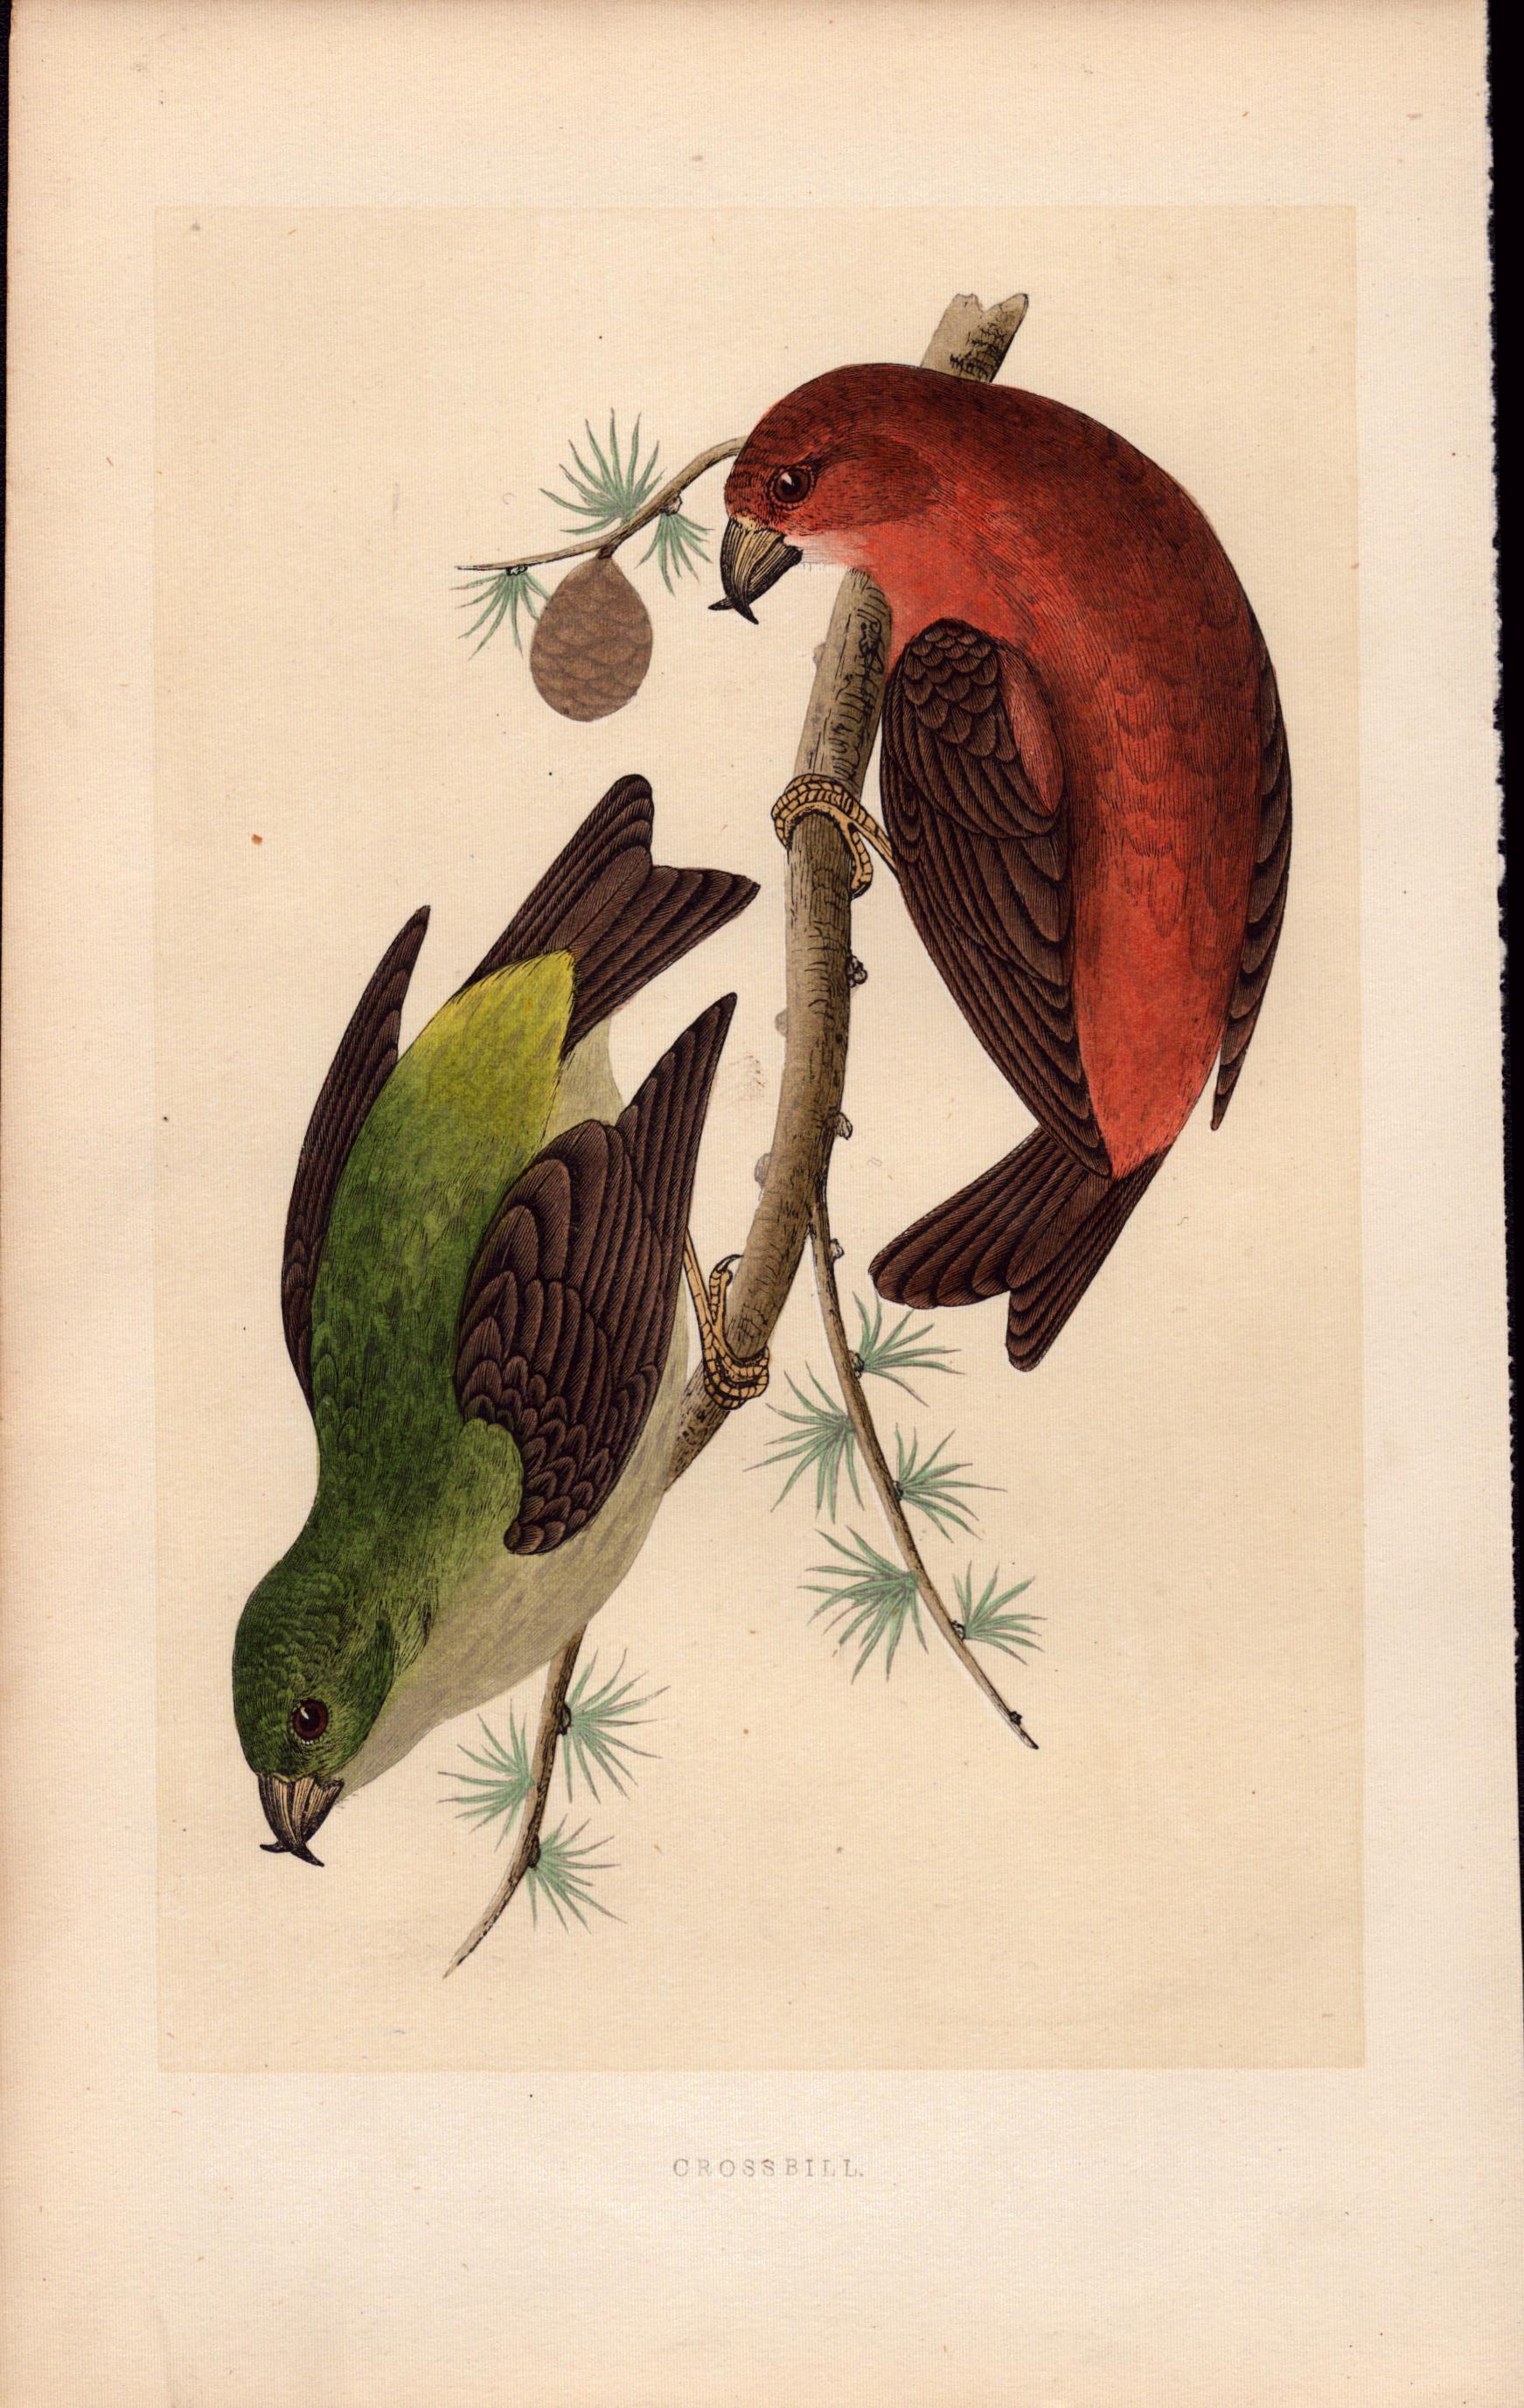 Crossbill Rev Morris Antique History of British Birds Engraving.